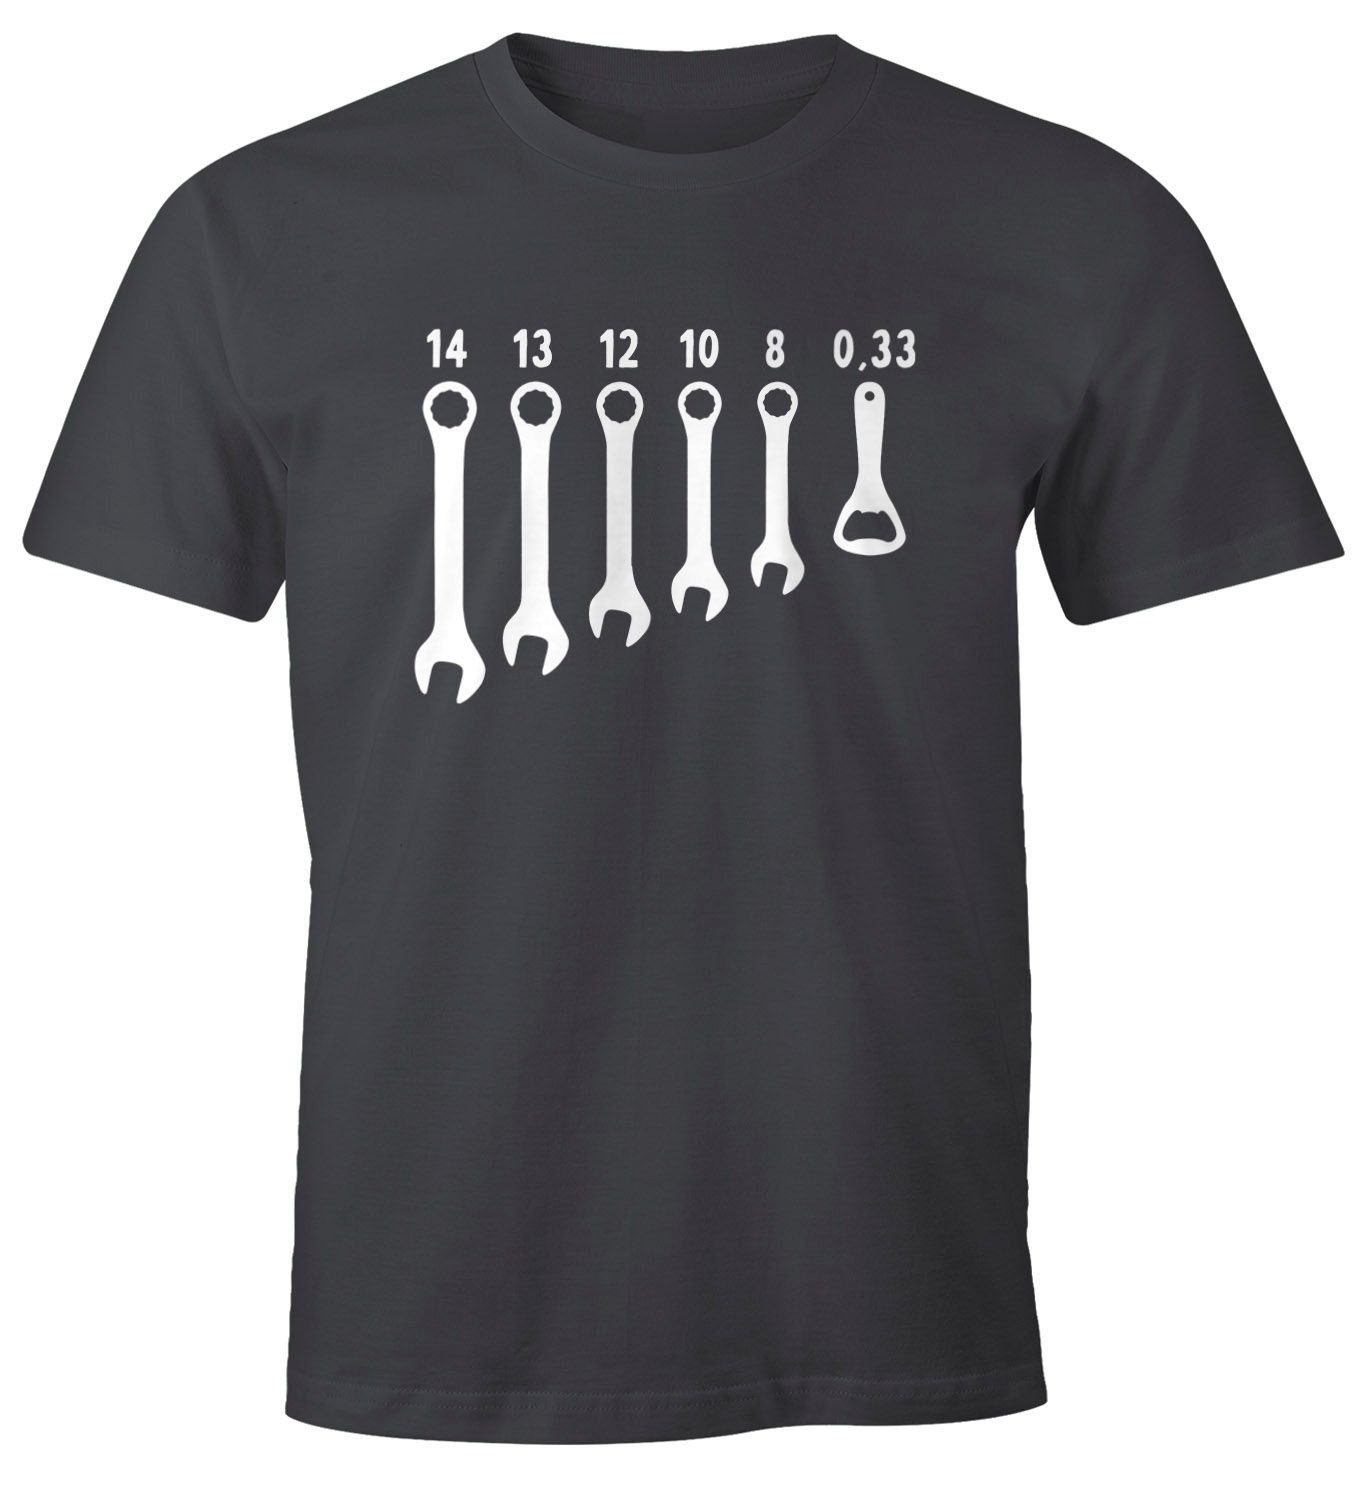 MoonWorks Print-Shirt Herren T-Shirt Bieröffner Flaschenöffner Schraubenschlüssel Fun-Shirt Herren Fun-Shirt Moonworks® mit Print grau